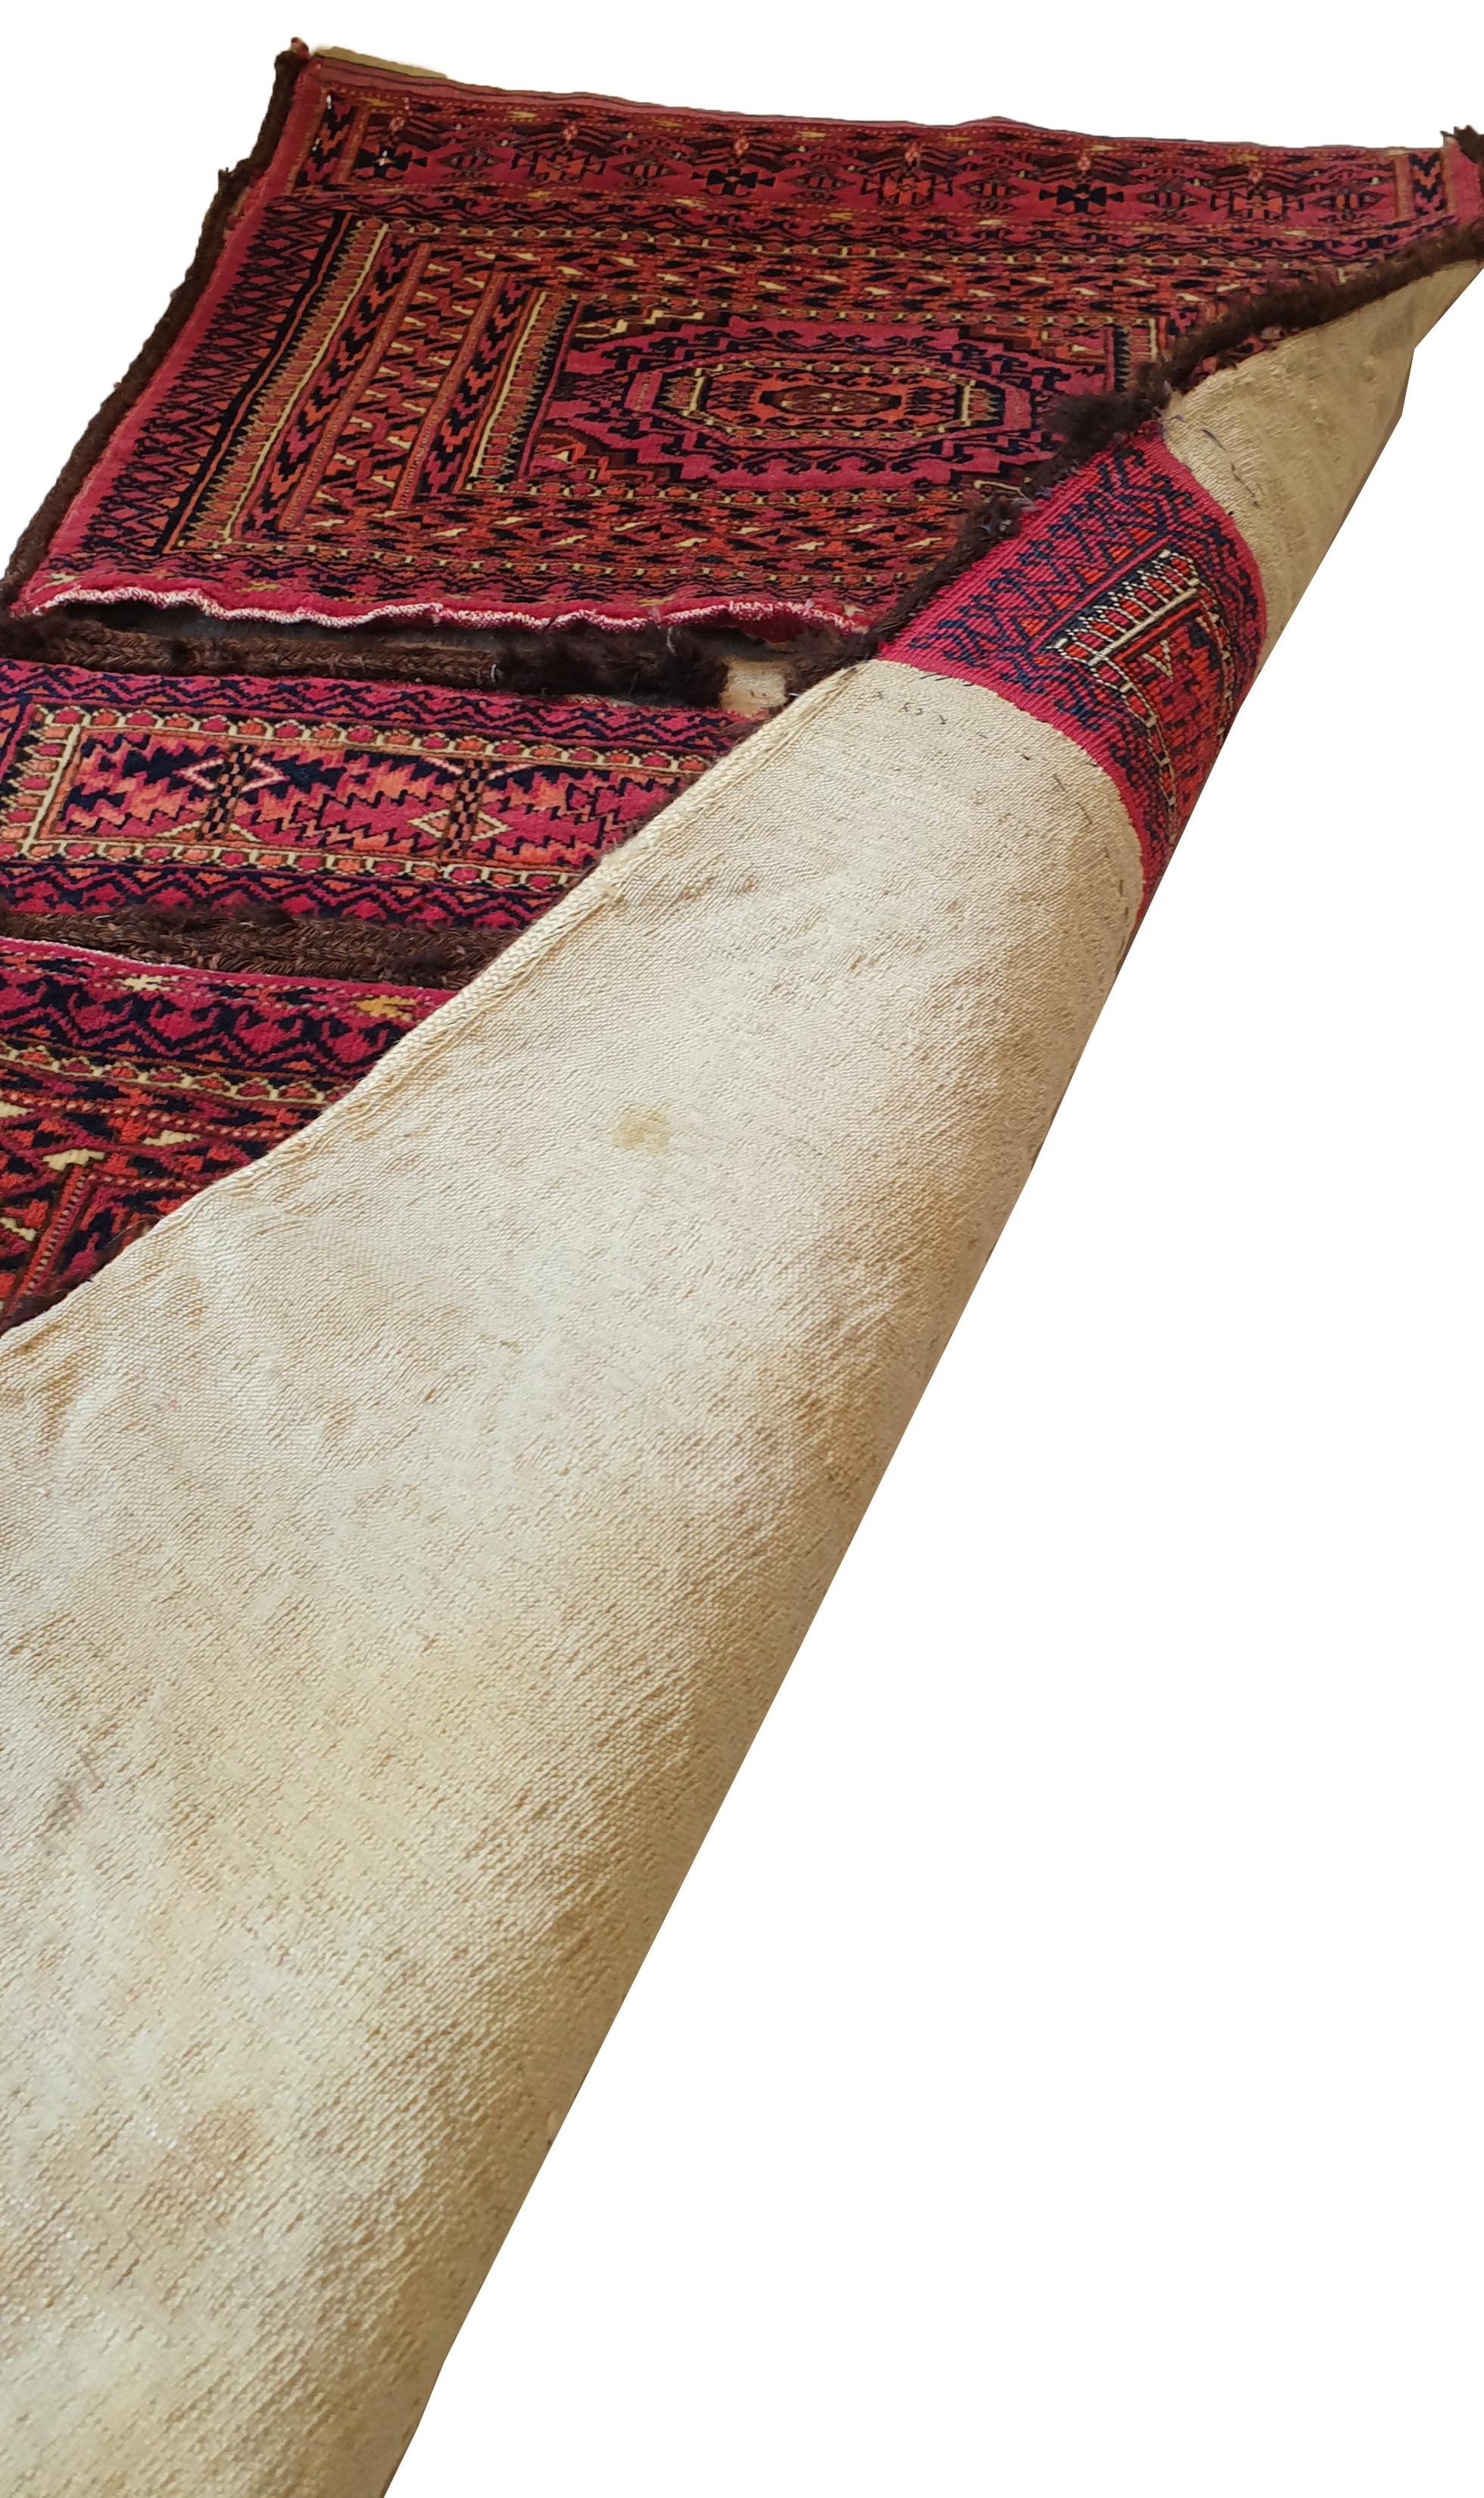 642 - Beau sac turkmène du 19ème siècle avec un joli motif Bukhara et des couleurs naturelles de champ rouge, finement noué à la main avec du velours de laine sur des bases de laine.